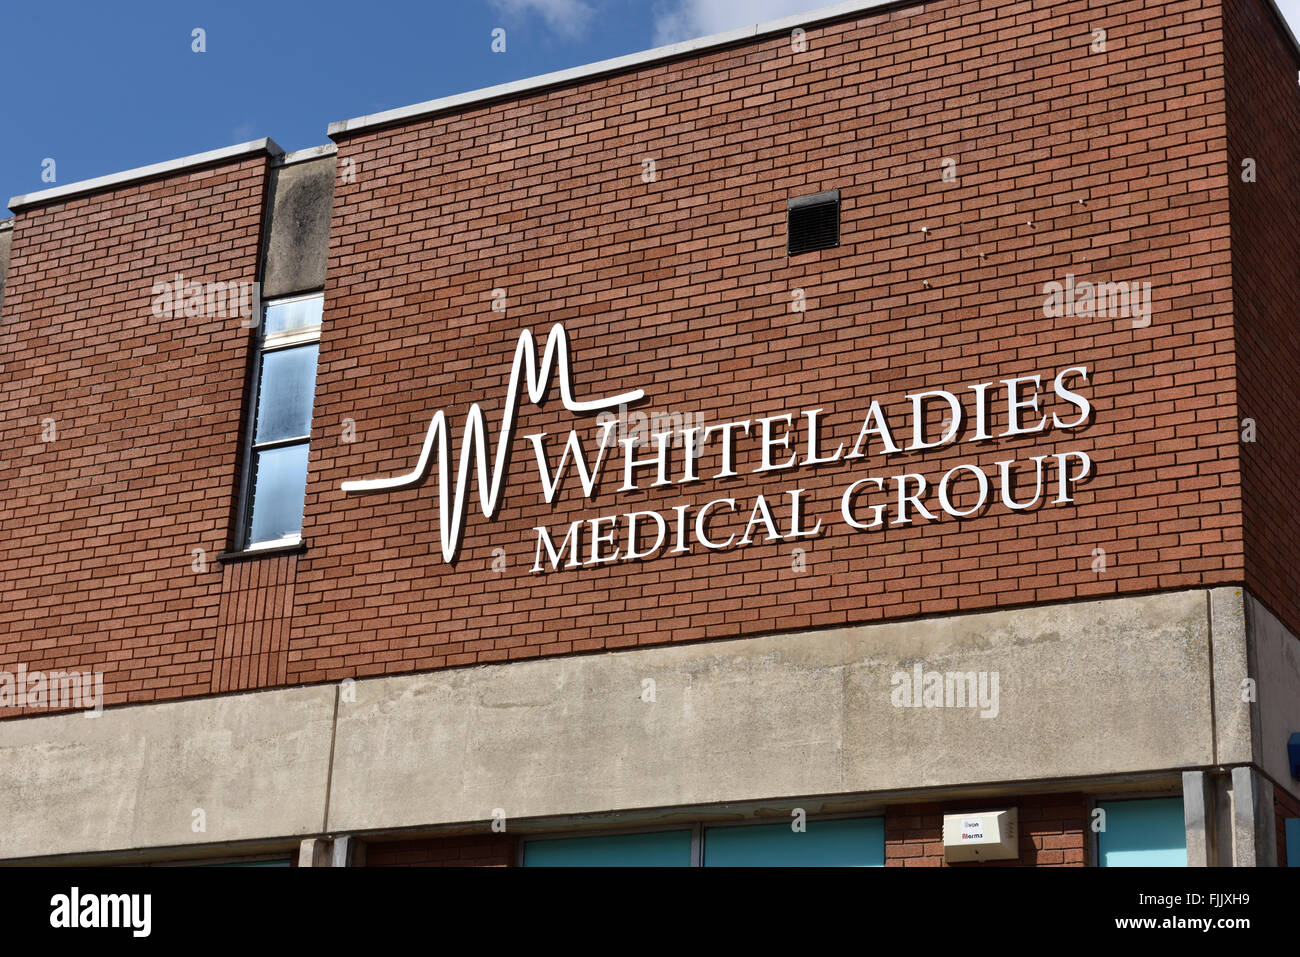 NHS Whiteladies Medical Group pratiques GP signe sur l'avant du bâtiment, Bristol, Royaume-Uni Banque D'Images